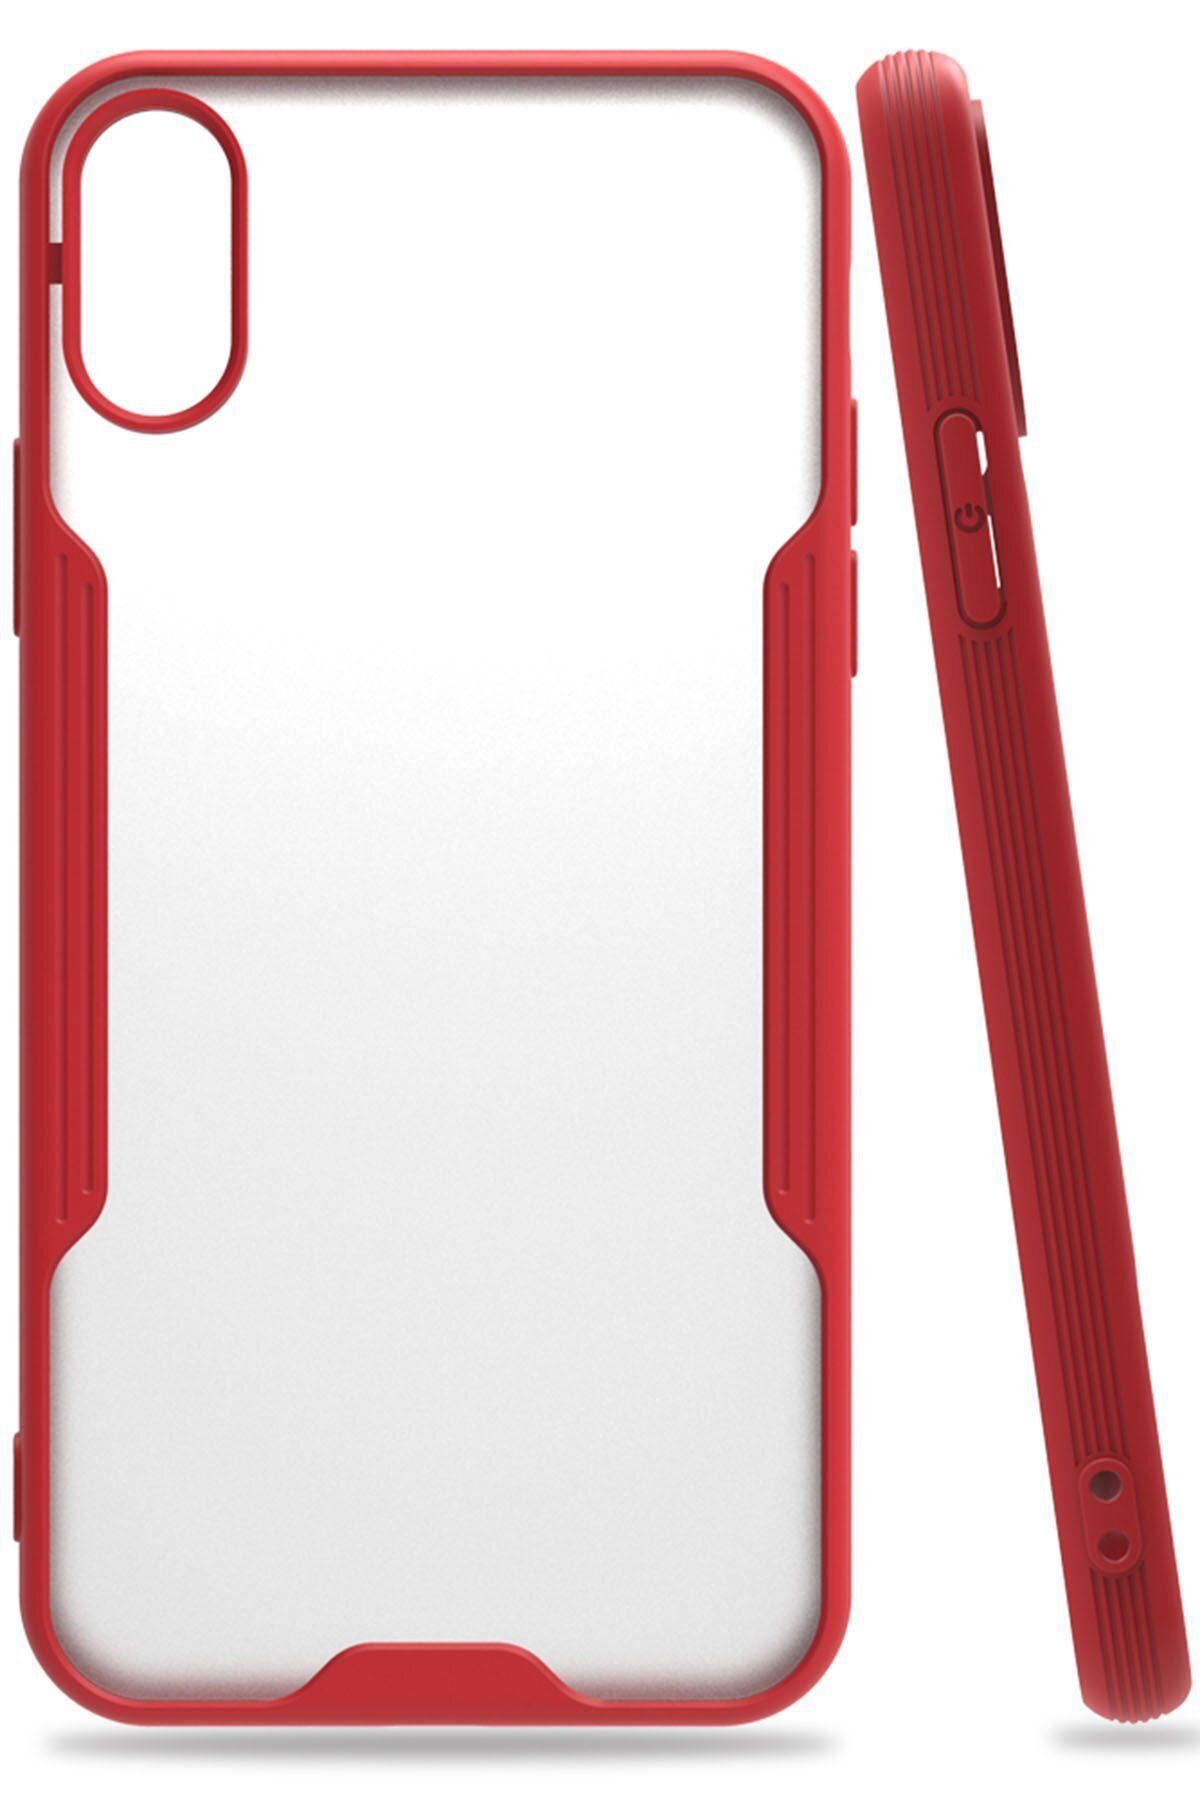 cepmoda iPhone X Kırmızı Renkli Ultra İnce Telefon Kılıfı Slim Kapak